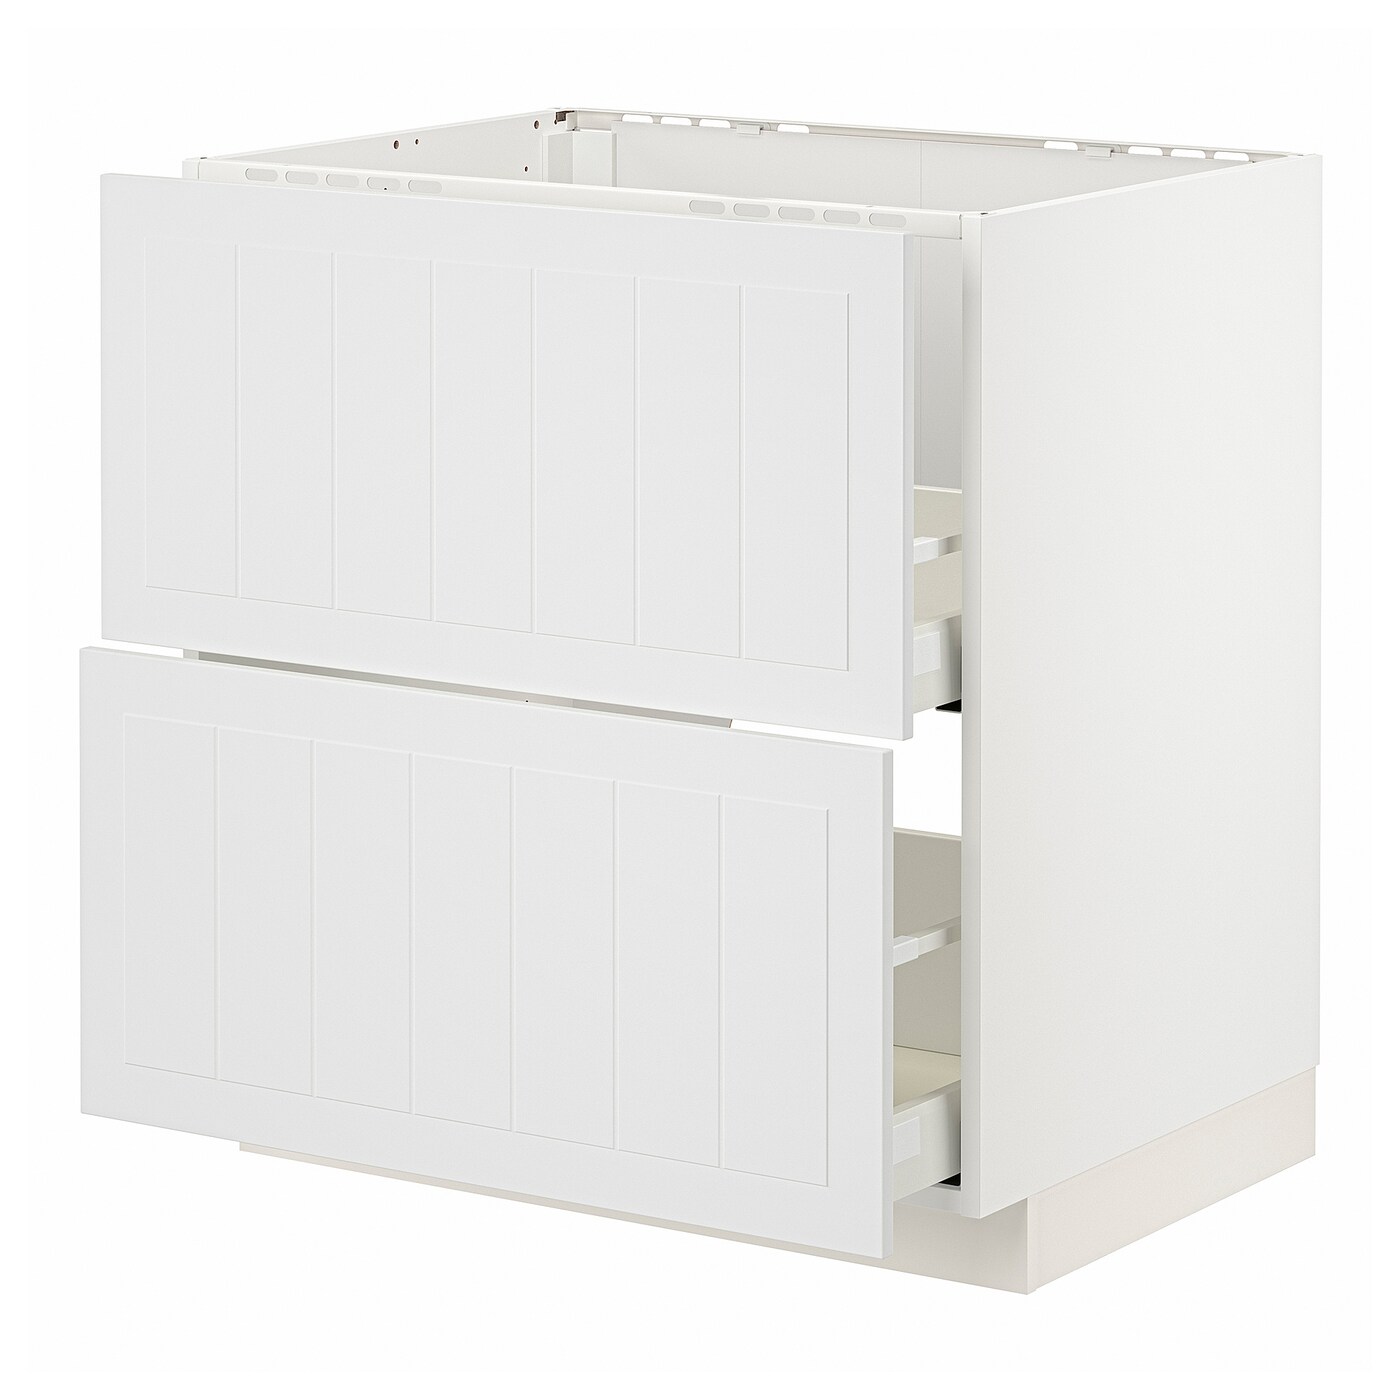 Напольный шкаф - METOD / MAXIMERA IKEA/ МЕТОД/ МАКСИМЕРА ИКЕА,  80х60 см, белый